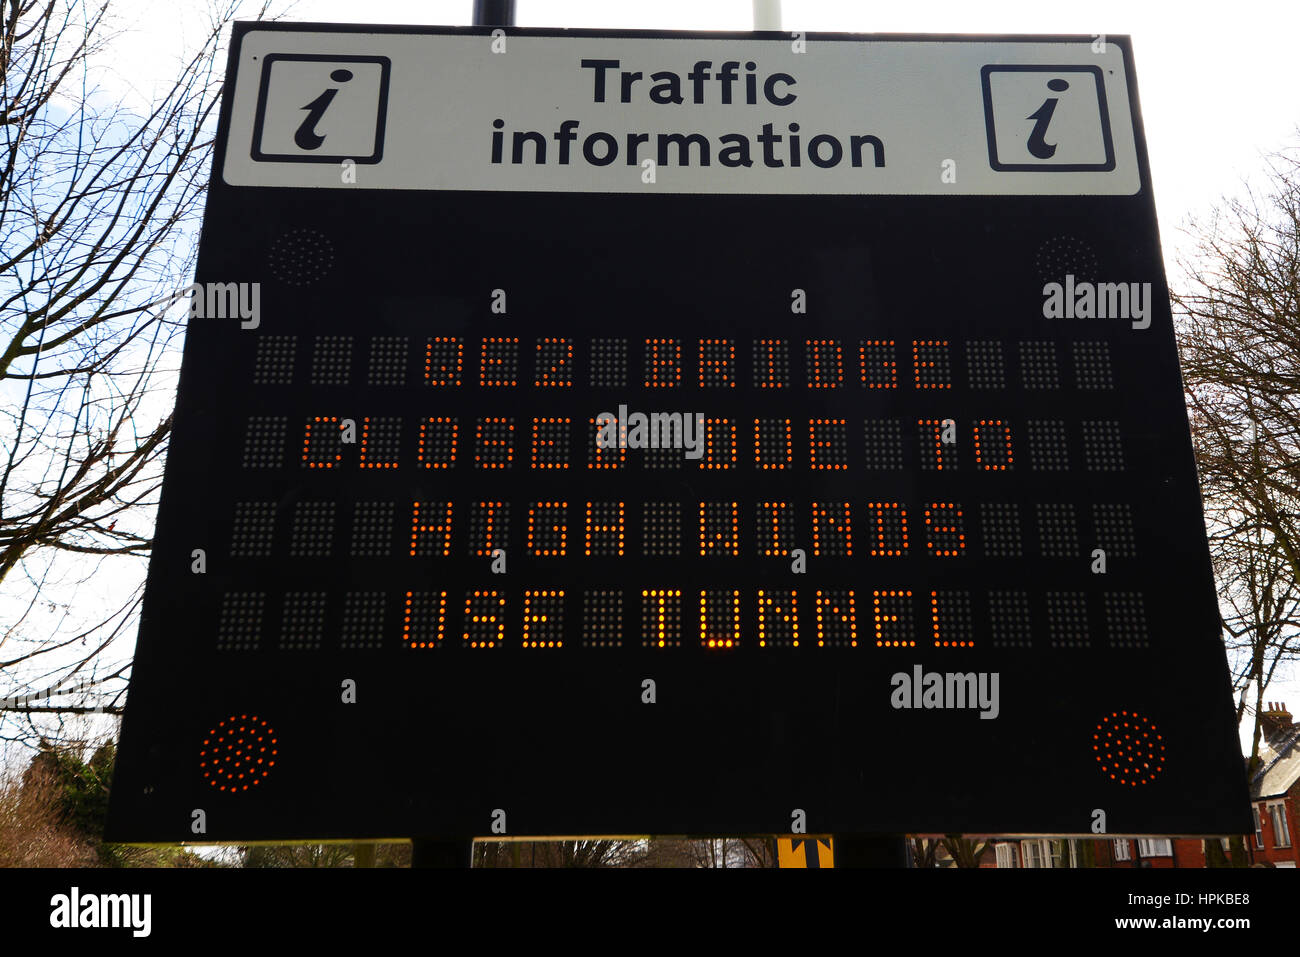 QE2 Brücke geschlossen. Matrix Verkehrsschild warnt, dass die Queen Elizabeth II Brücke - die Dartford Crossing - aufgrund der hohen Winde der Sturm Doris geschlossen ist Stockfoto